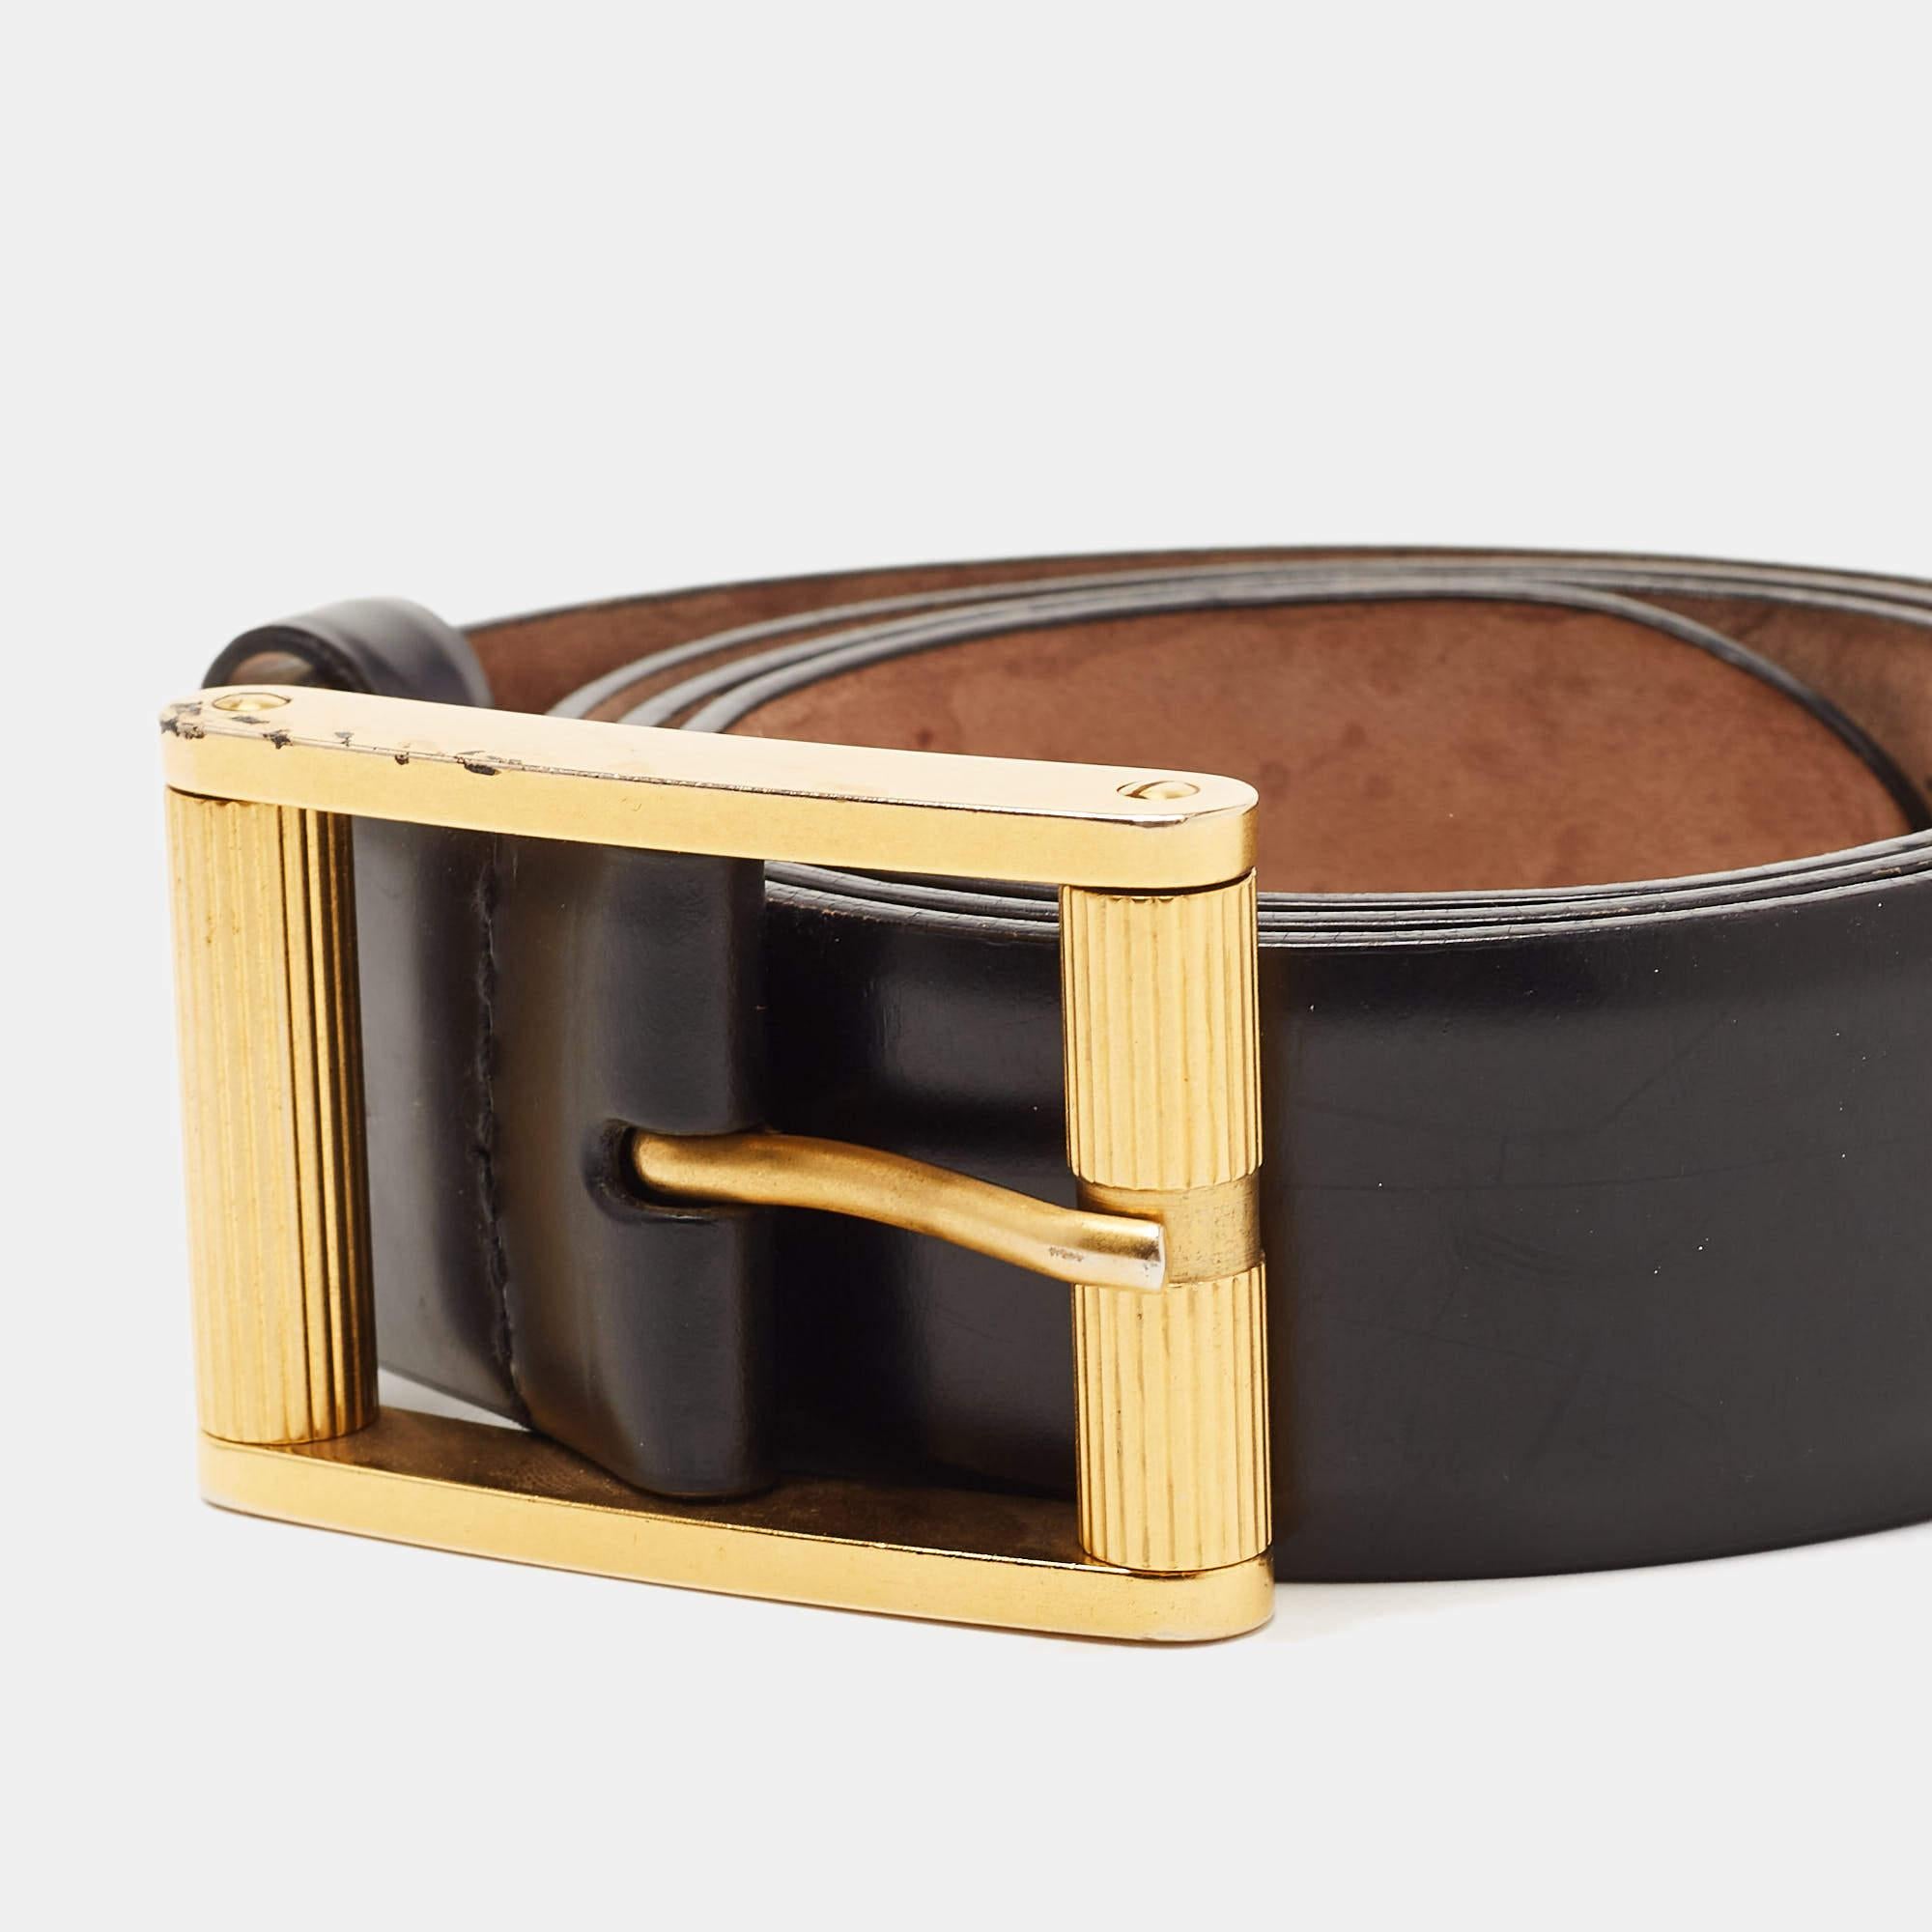 Dieser D&G-Gürtel ist ein unverzichtbares Accessoire, das Sie noch heute zu Ihrer klassischen Kollektion hinzufügen können. Dieser strapazierfähige Gürtel ist aus schwarzem Leder gefertigt und mit einer schmalen goldfarbenen Dornschließe versehen.

